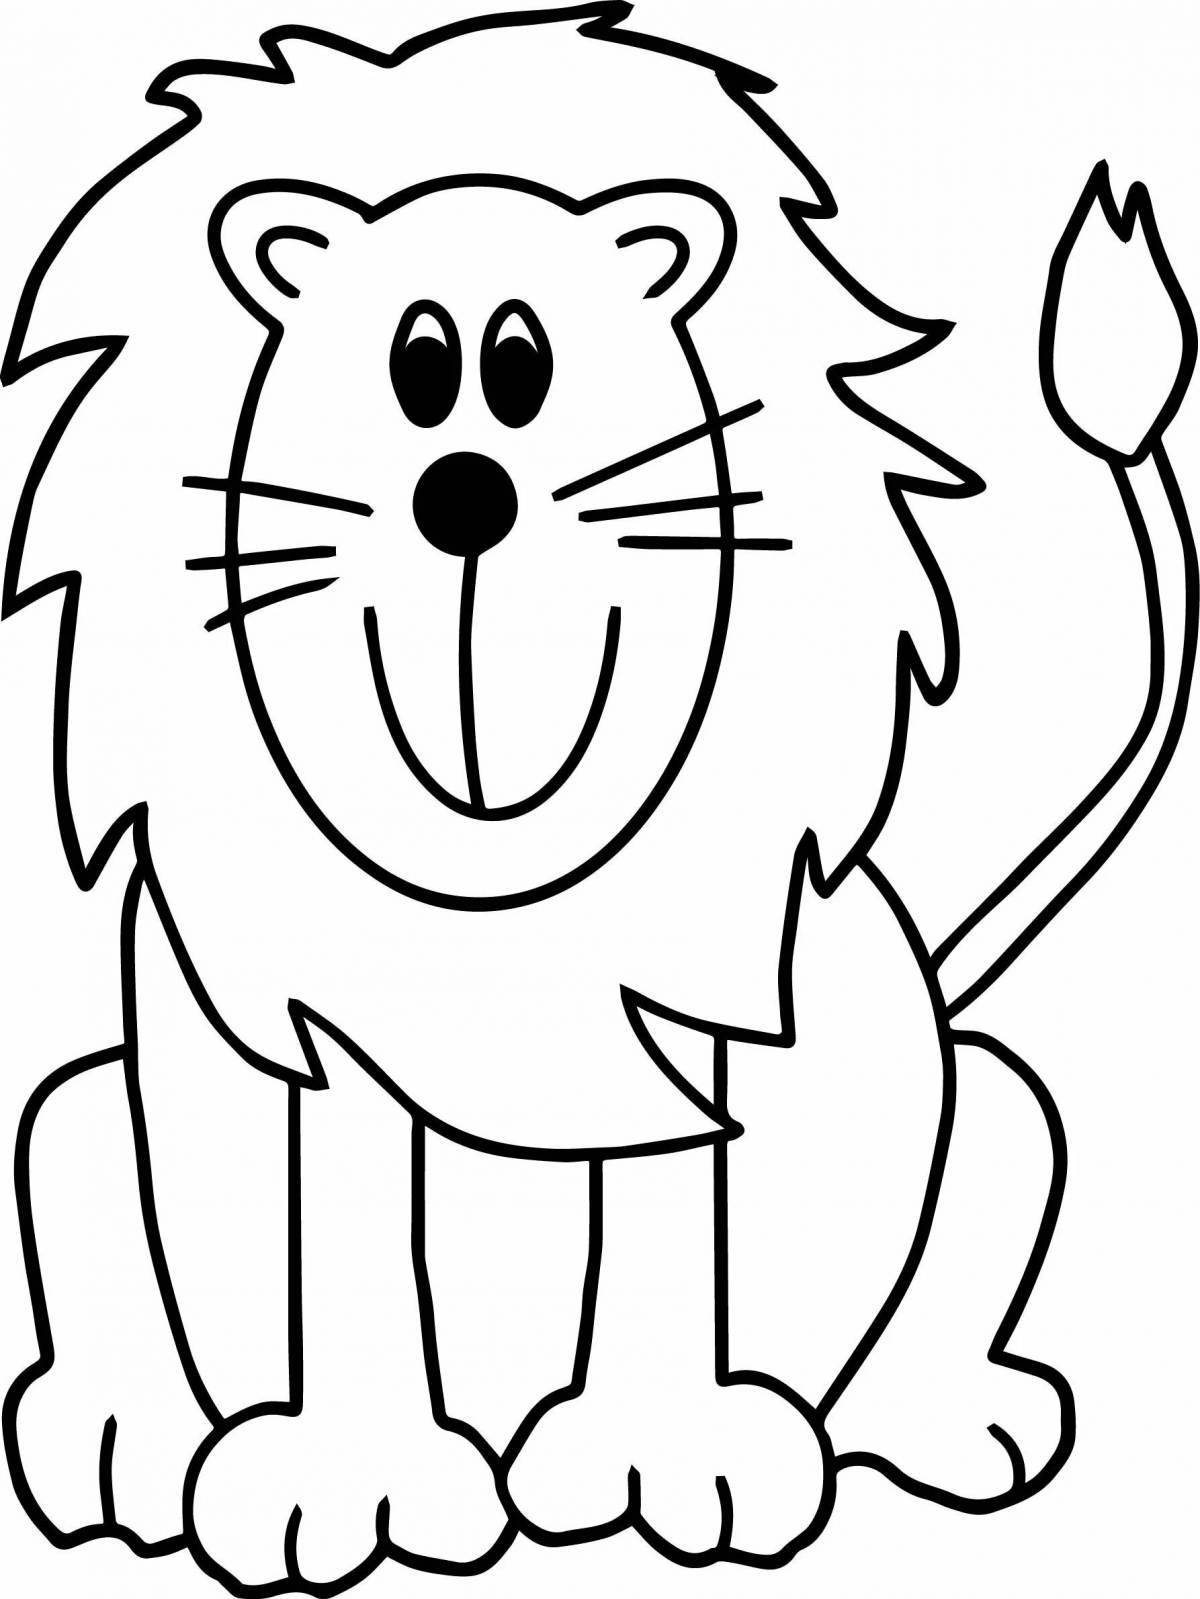 Анимированная страница раскраски львенка